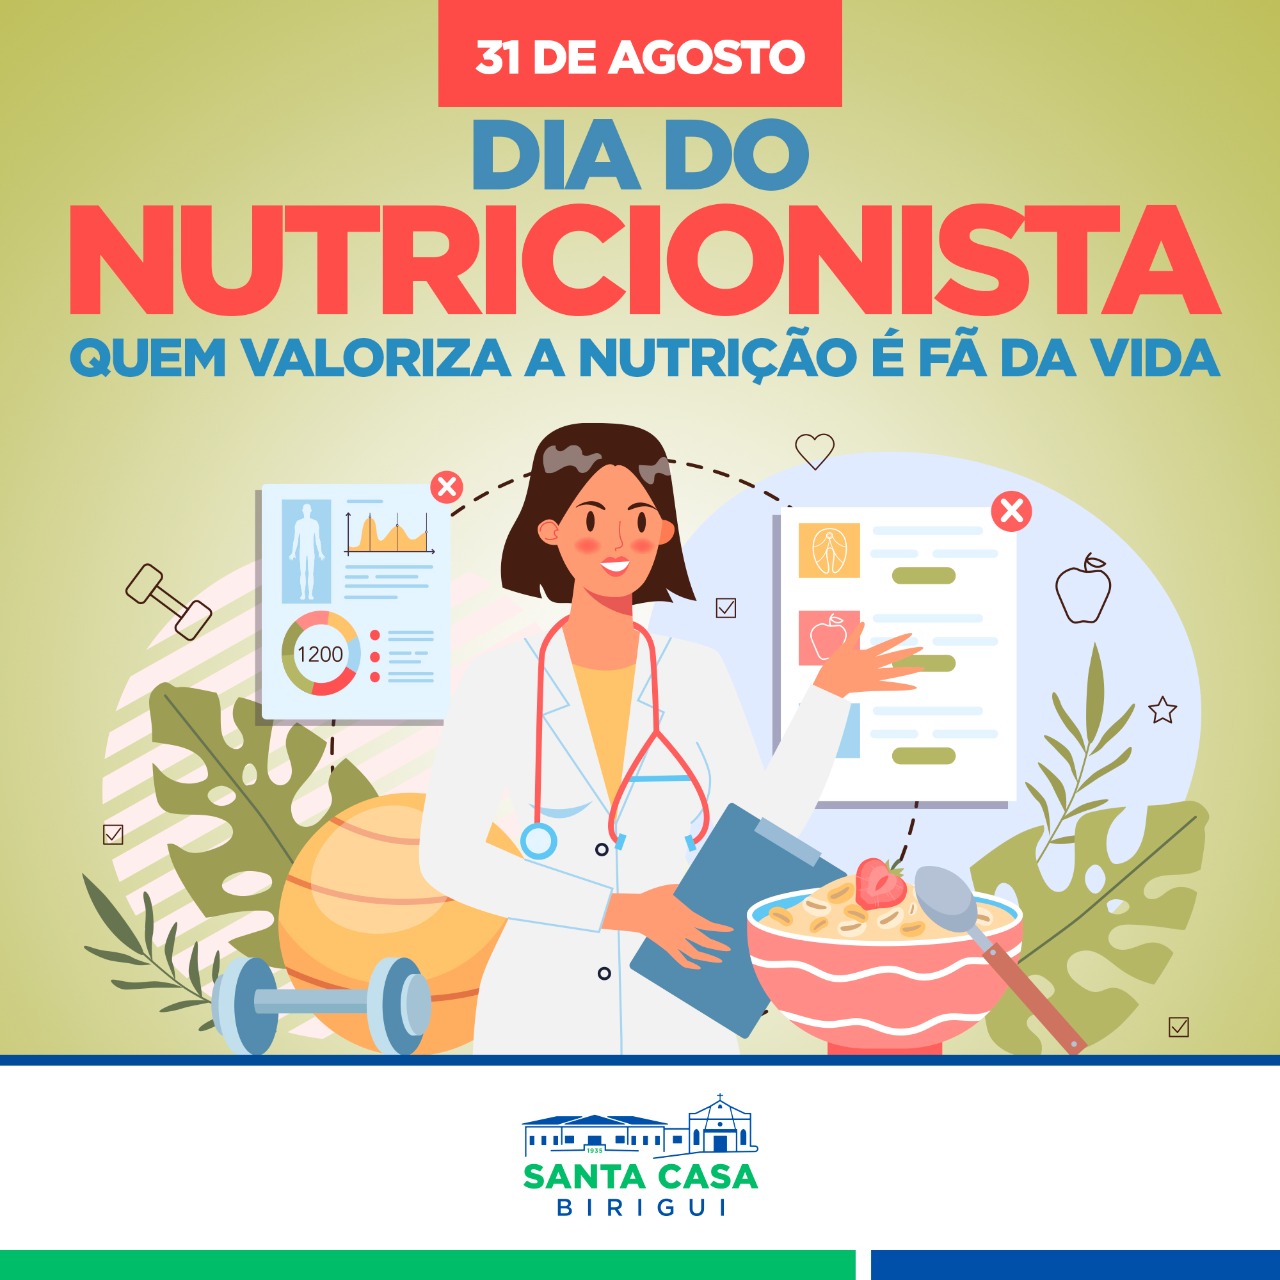 31 de agosto – Dia do Nutricionista